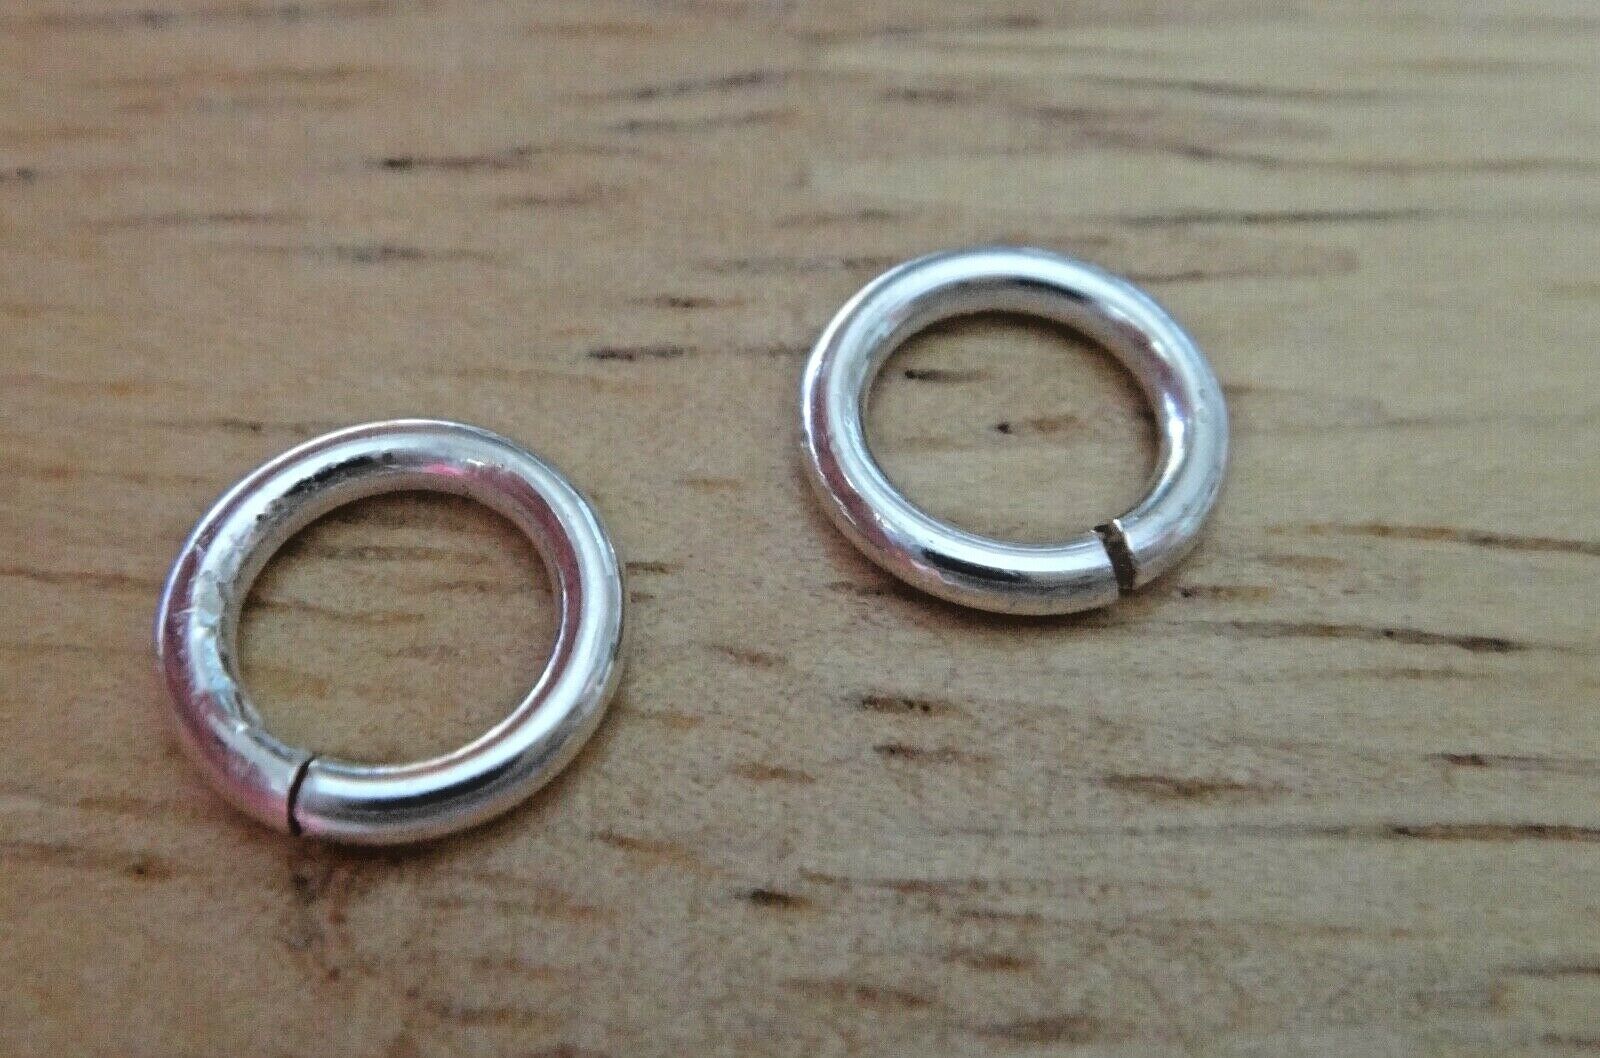 500 Jump Rings Double Loop Split Rings Stainless Steel Jewelry